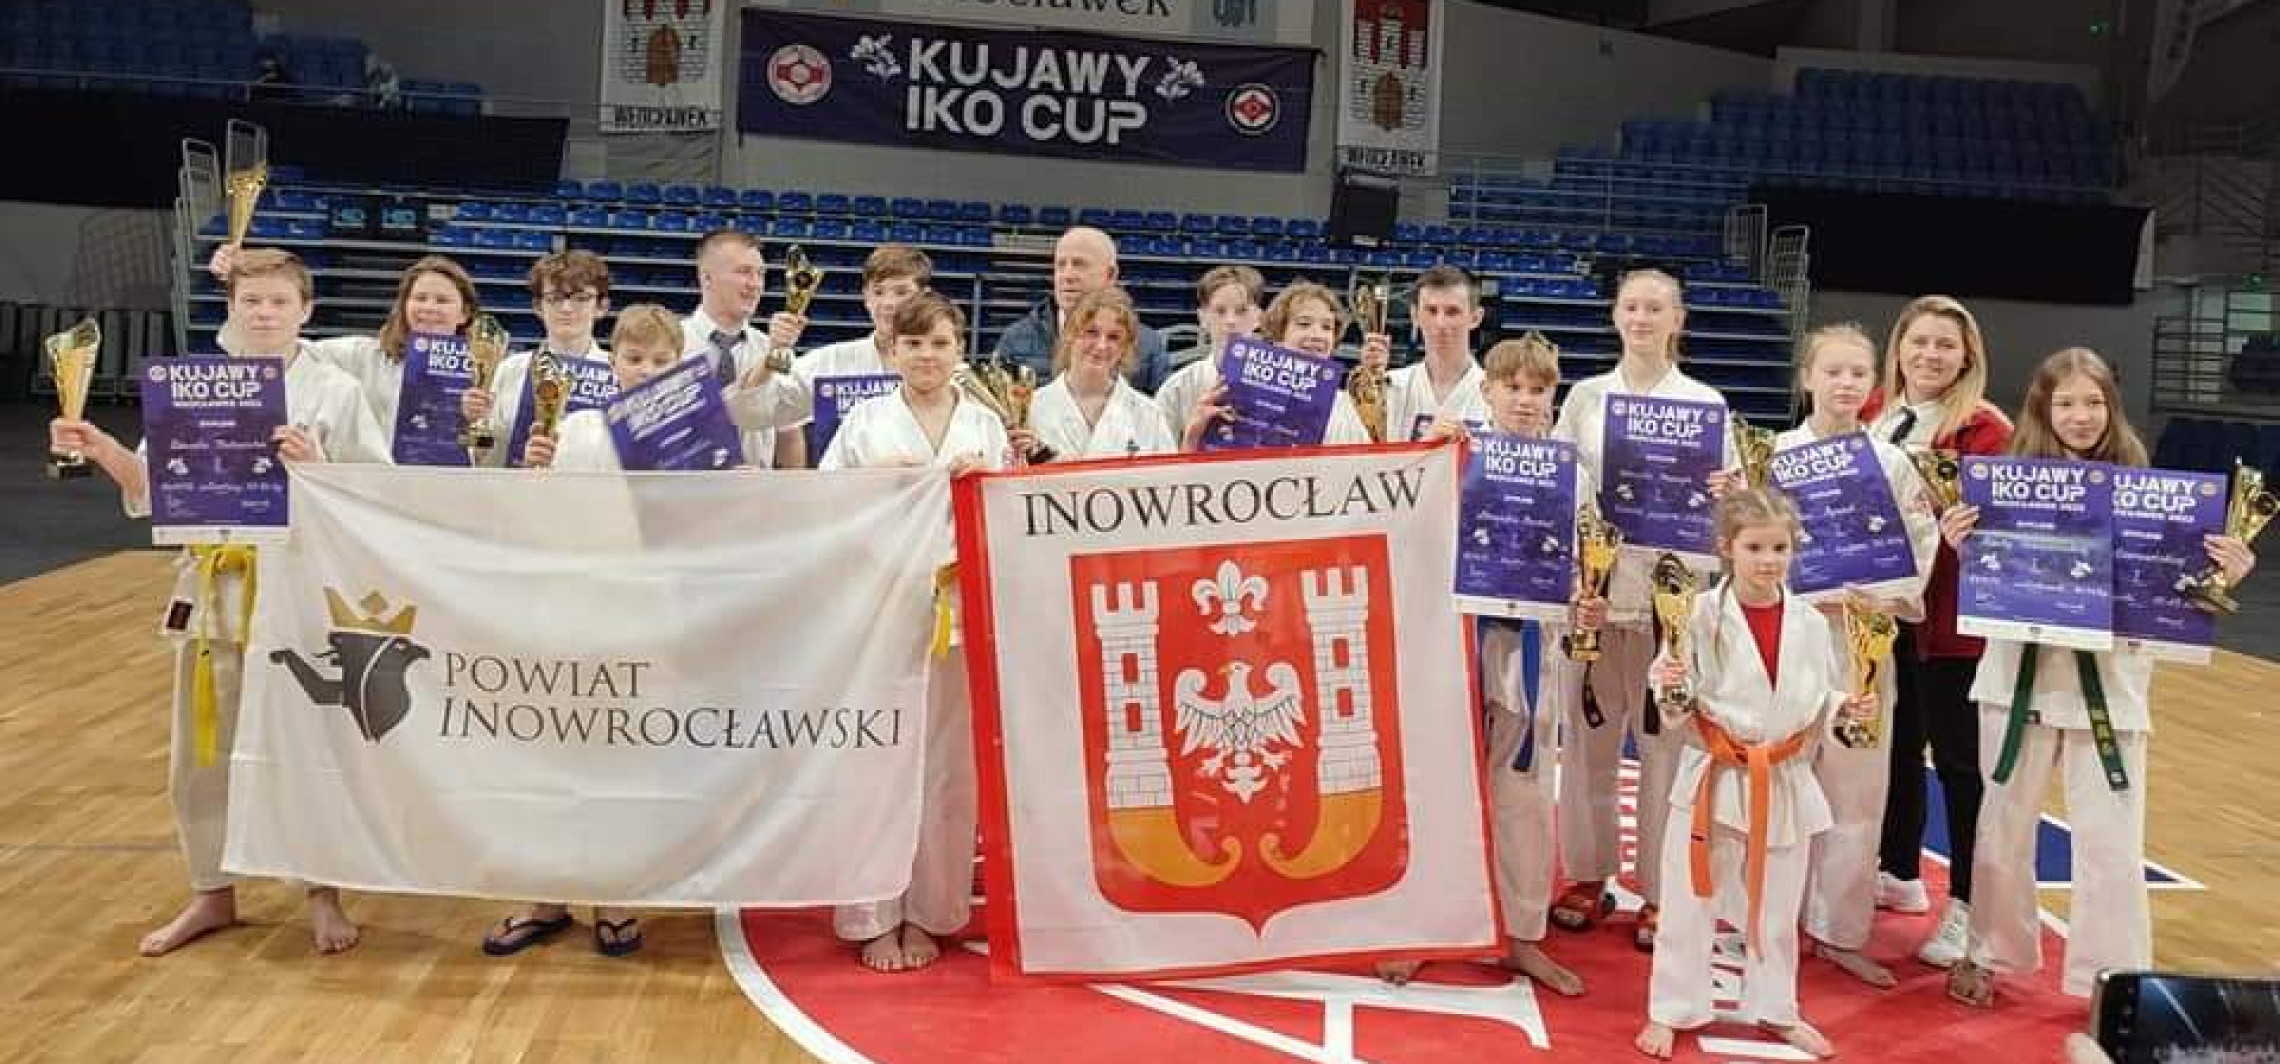 Inowrocław - Inowrocławianie uczestniczyli w IKO KUJAWY CUP